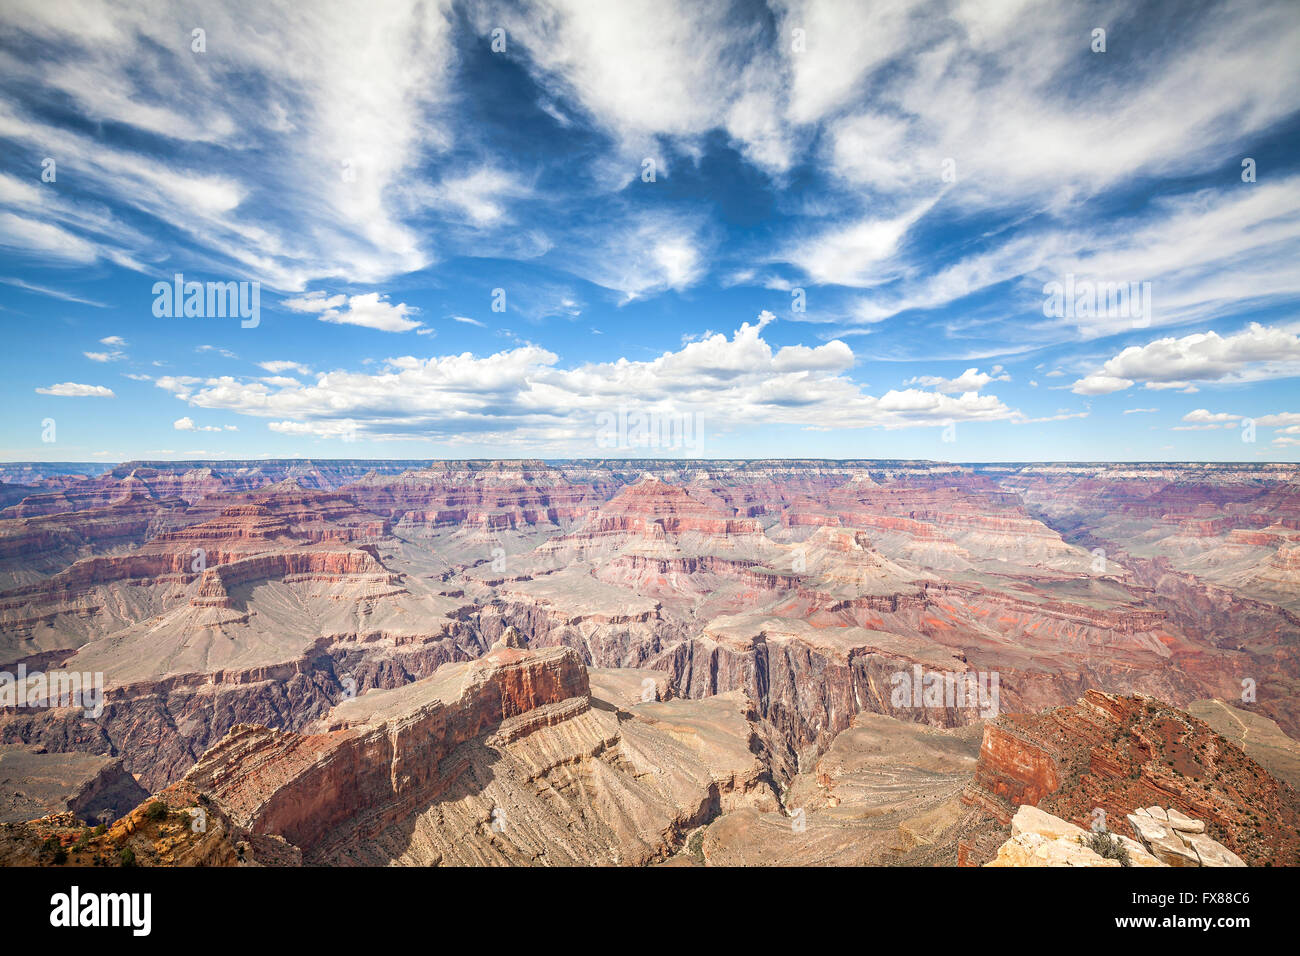 Bordo Sud del Grand Canyon National Park, una delle principali destinazioni turistiche negli Stati Uniti. Foto Stock